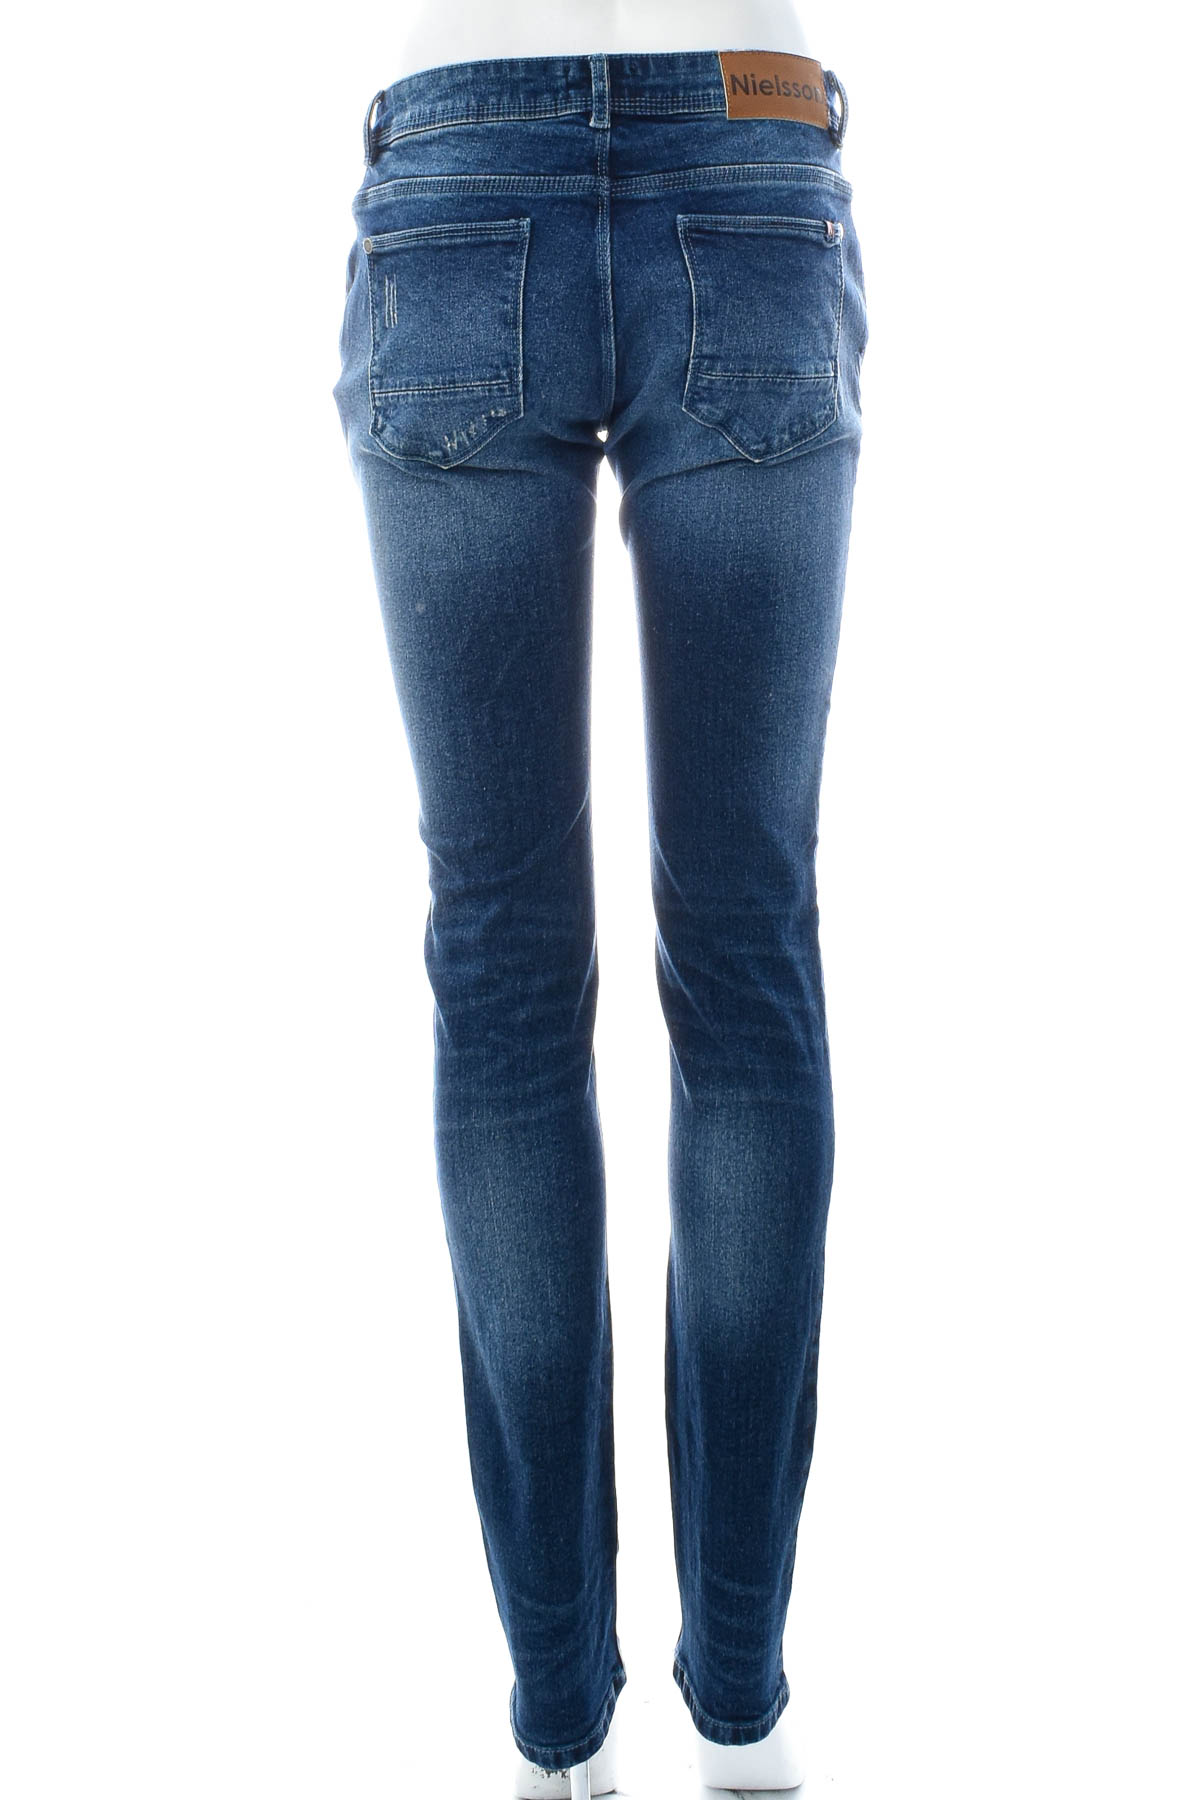 Women's jeans - Nielsson - 1